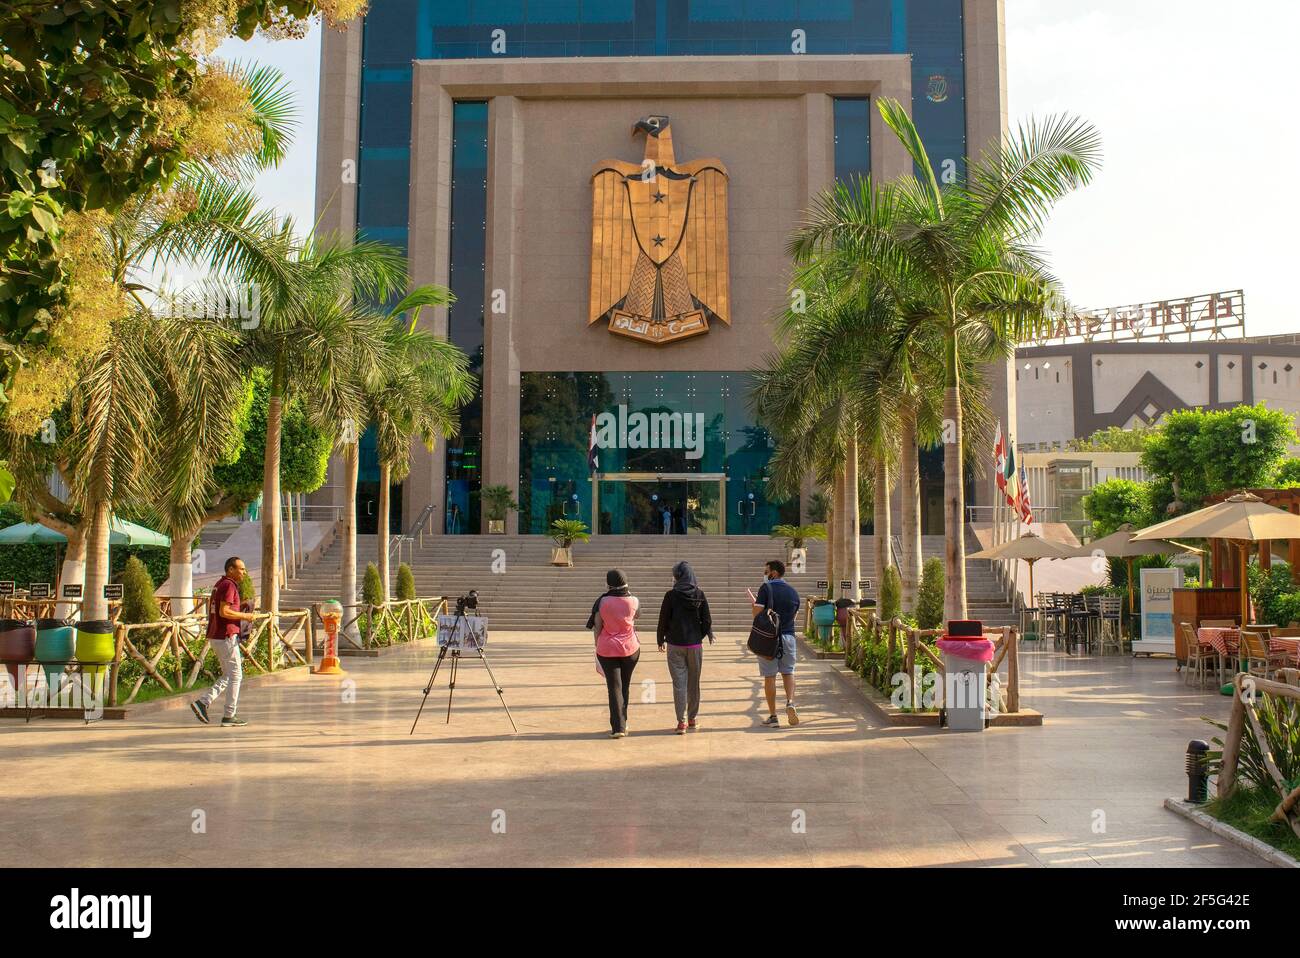 Le Caire, Egypte - 04 octobre 2020 : entrée de la Tour du Caire Zamalek, une tour de télévision dans le quartier moderne de Zamalek, entourée par le Nil. Banque D'Images